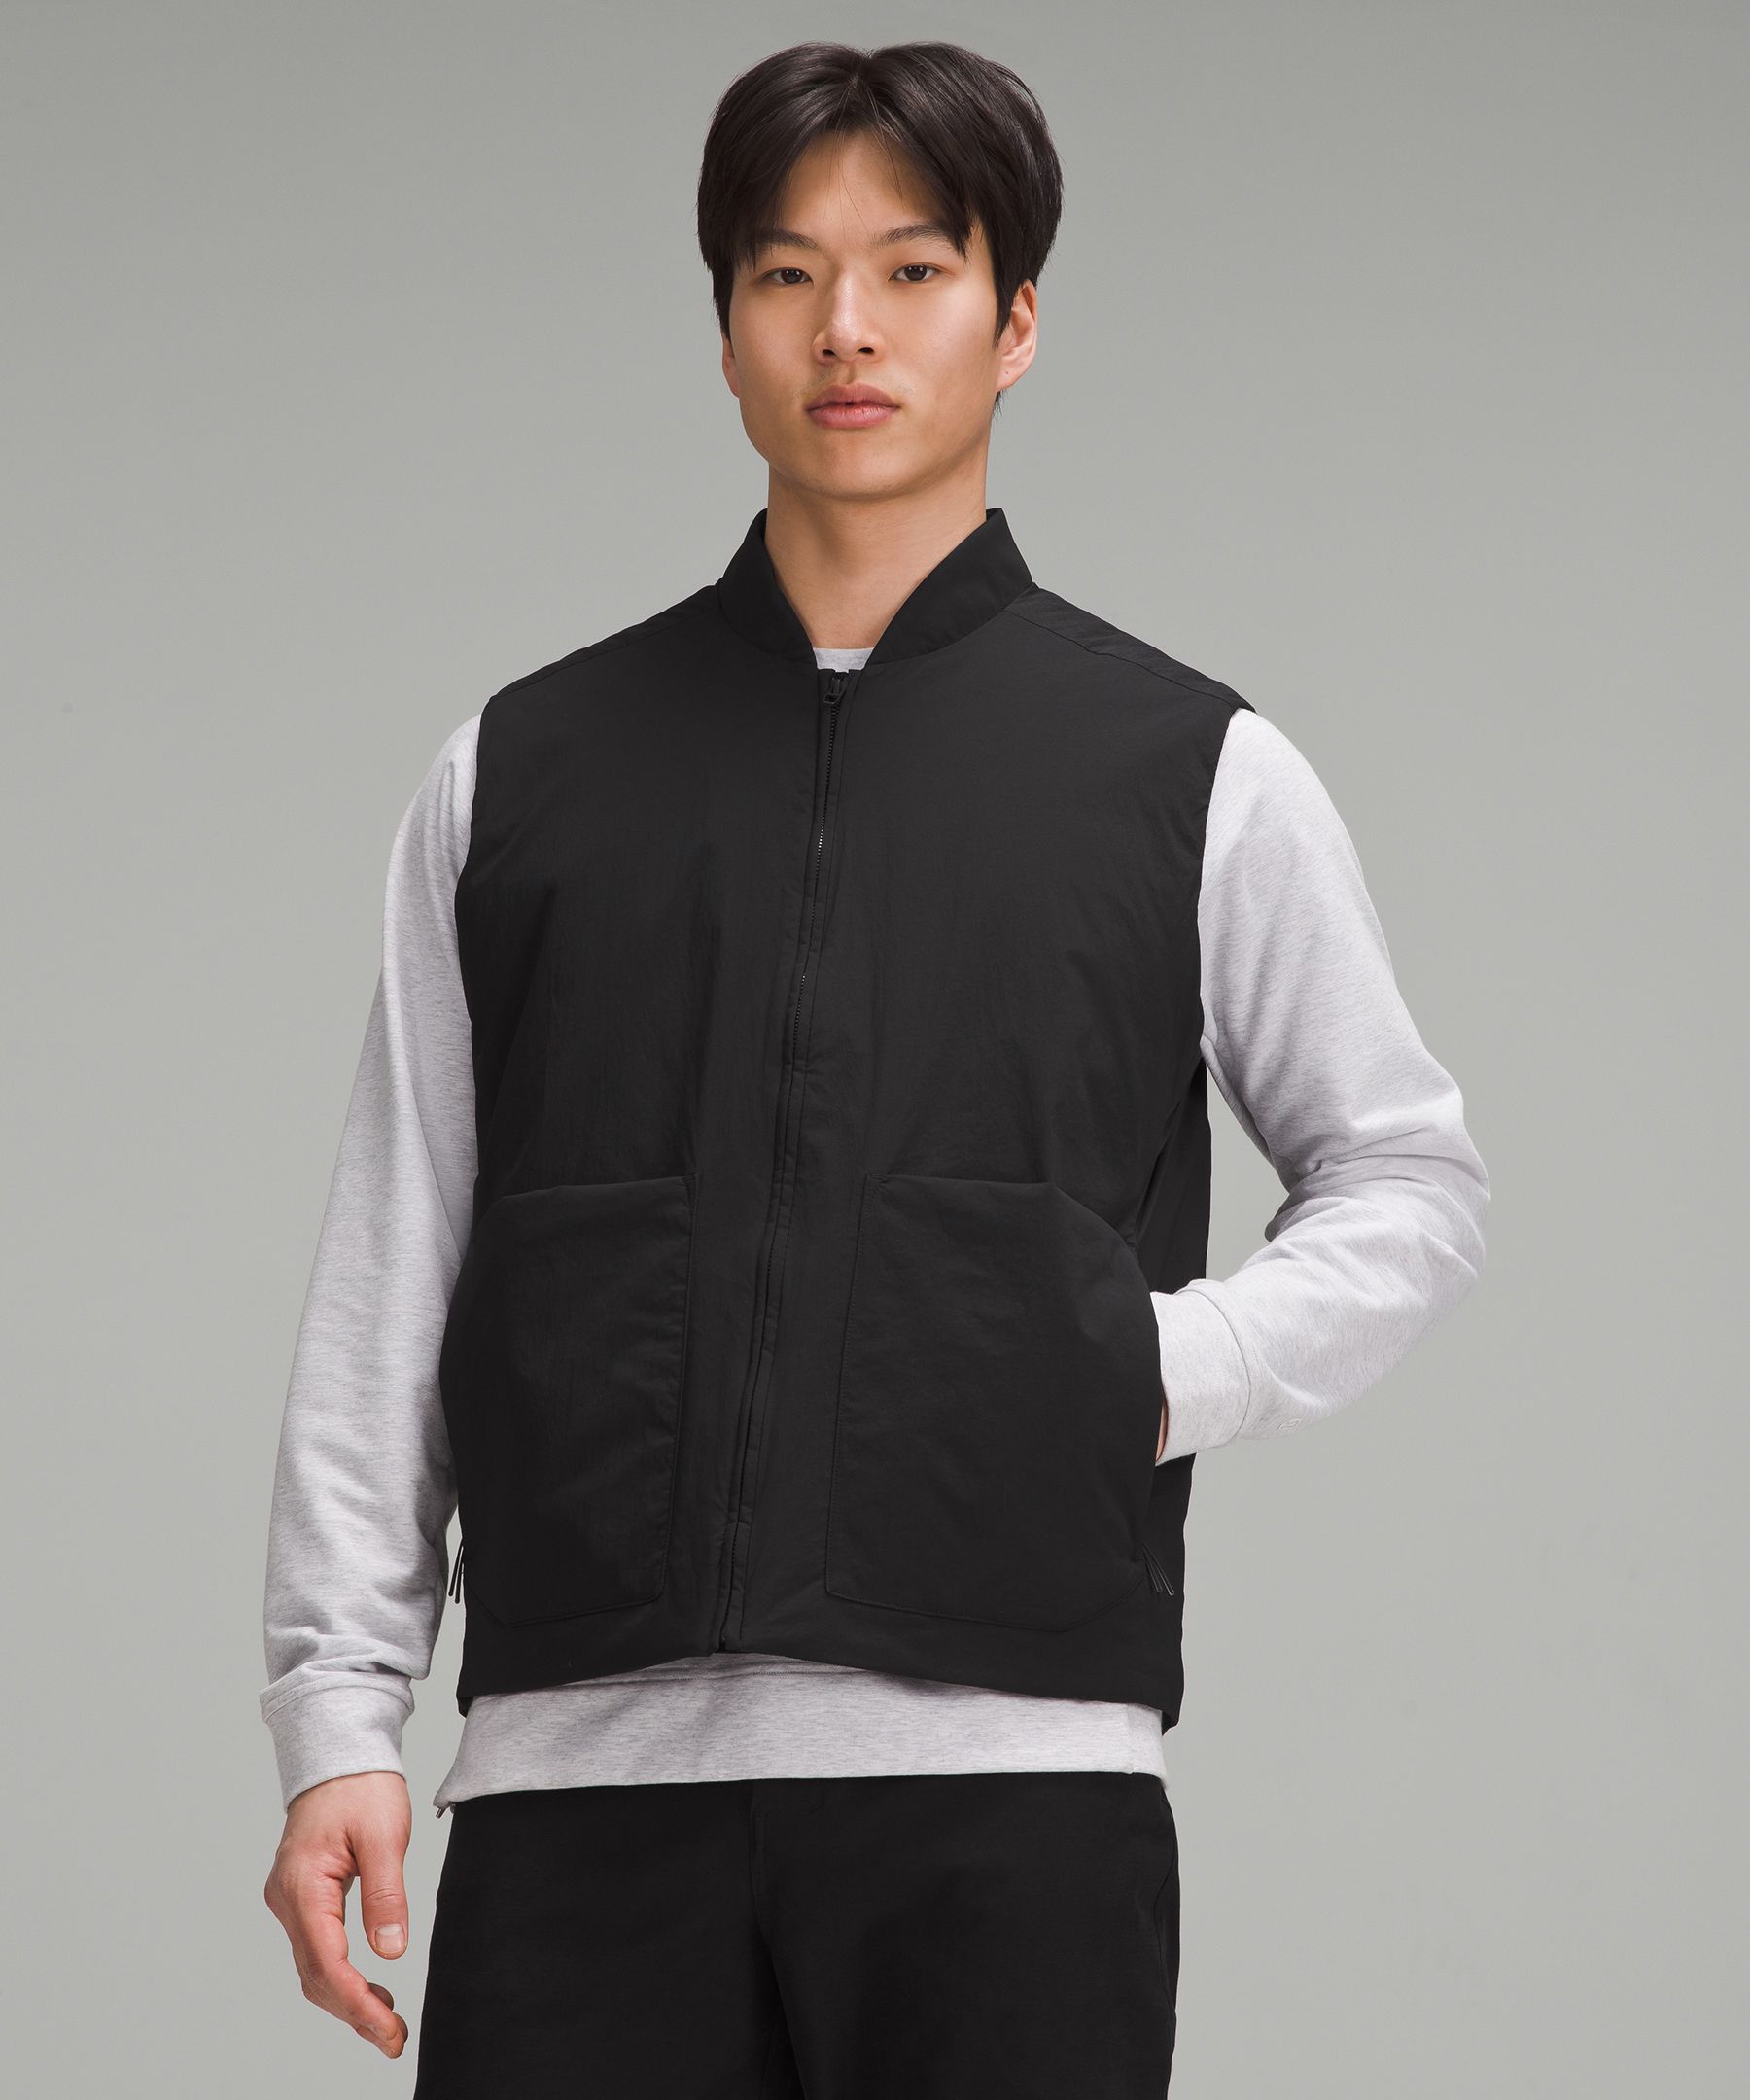 Lululemon Athletica Men's Capacity Jacket Size M Full Zip Training Grey  Black